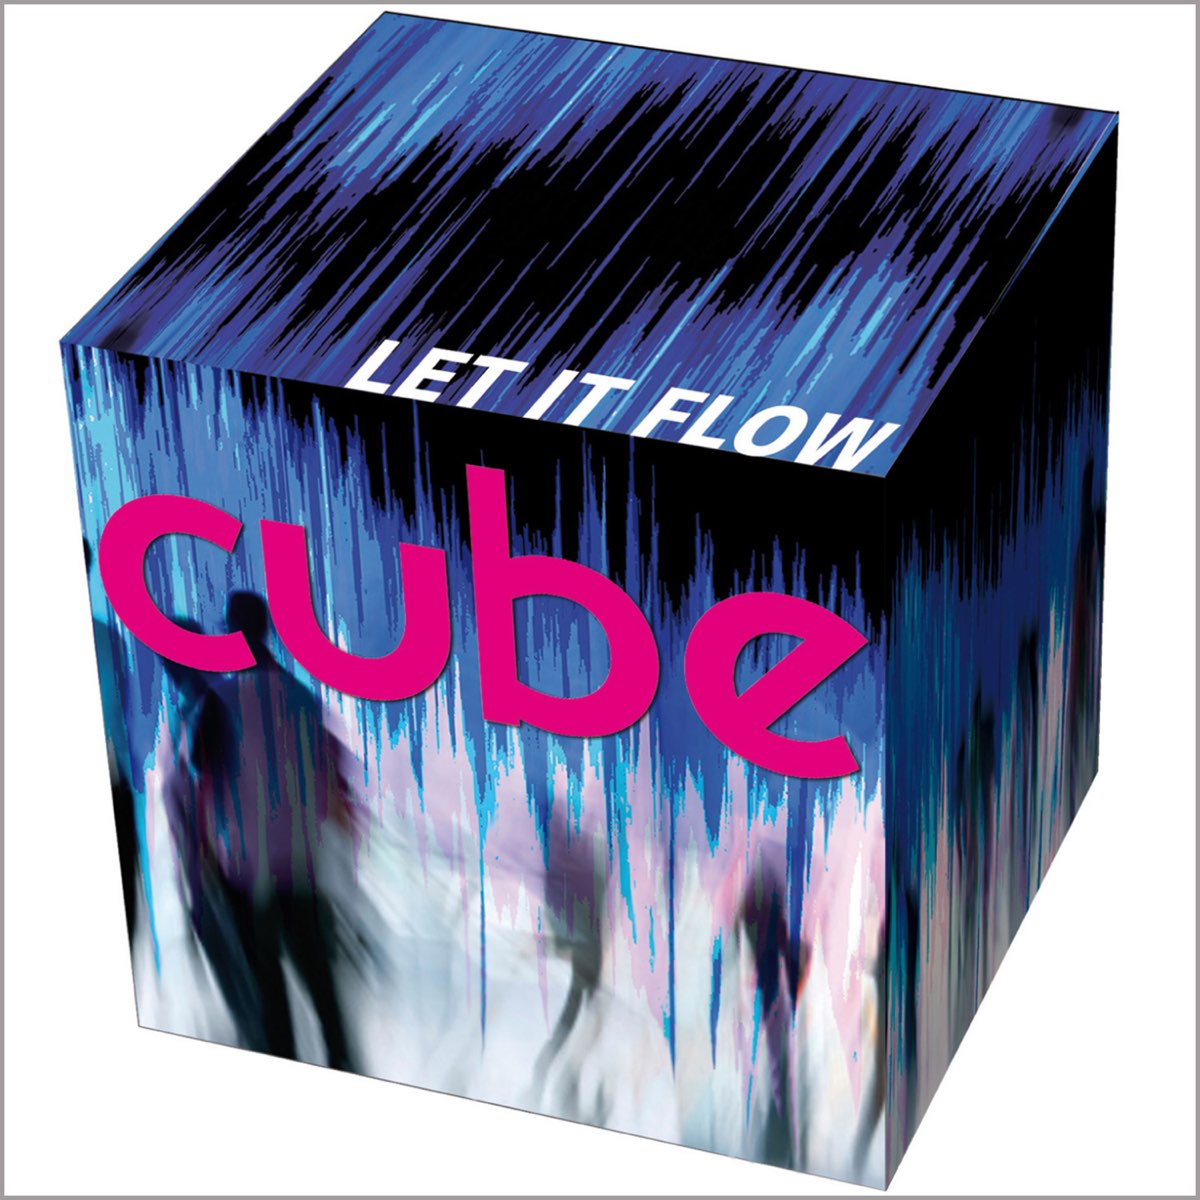 Cube музыка. Black Cube певец. Cube-Concert-boy. Альбомы с кубом на обложке. Куб музыка к фильму.